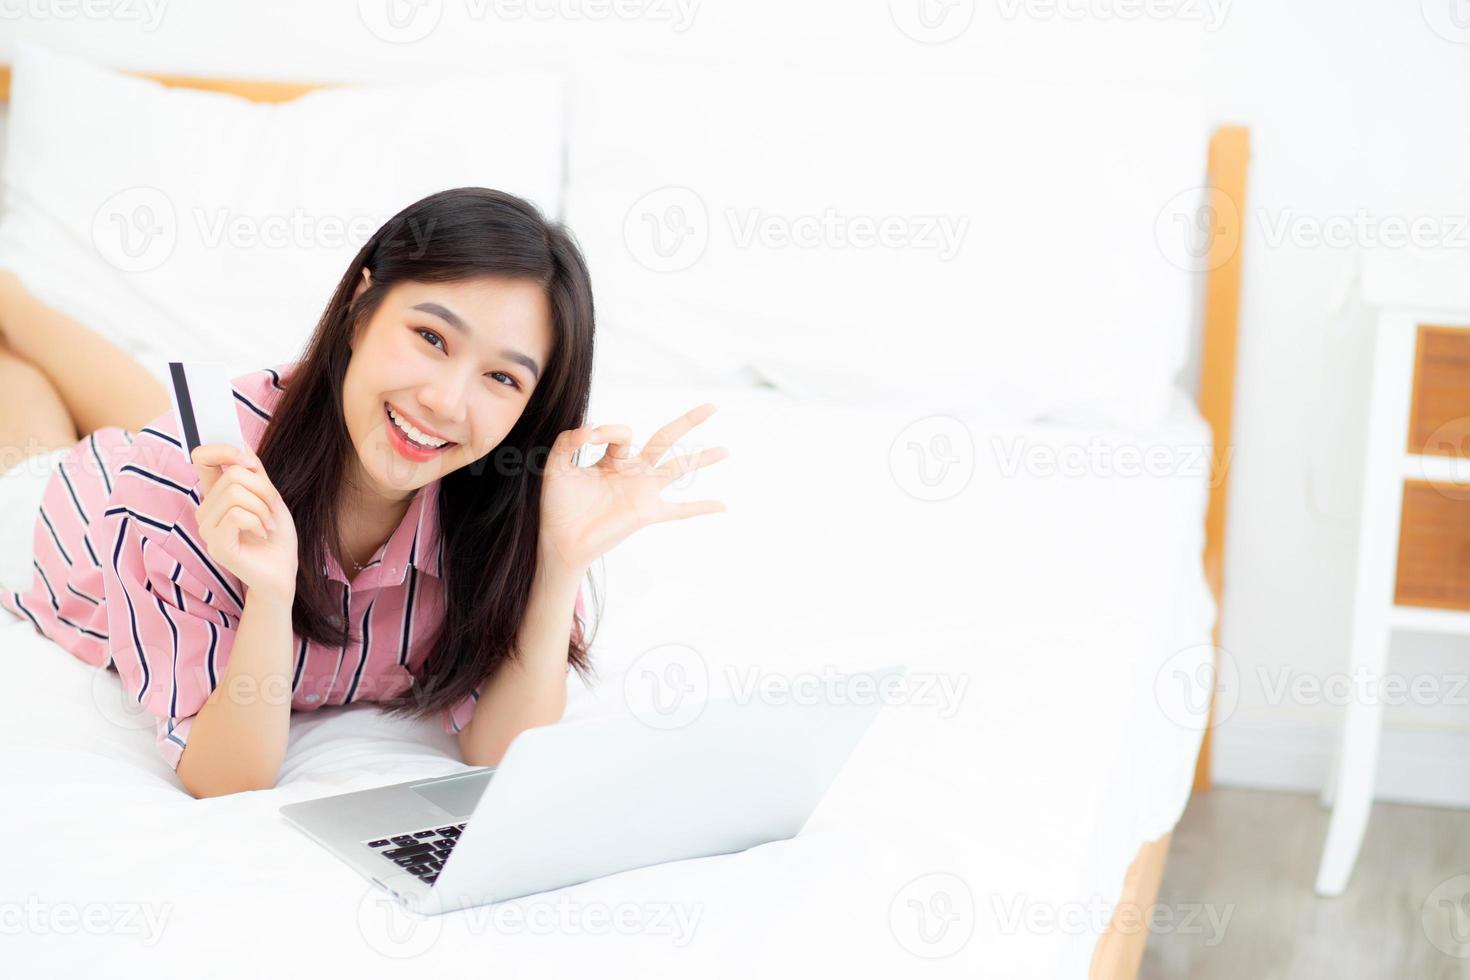 mooi van portret jonge aziatische vrouw liegen gebruikers creditcard met laptop, inhoud meisje online winkelen en betaling met notebook op bed in slaapkamer, lifestyle concept. foto